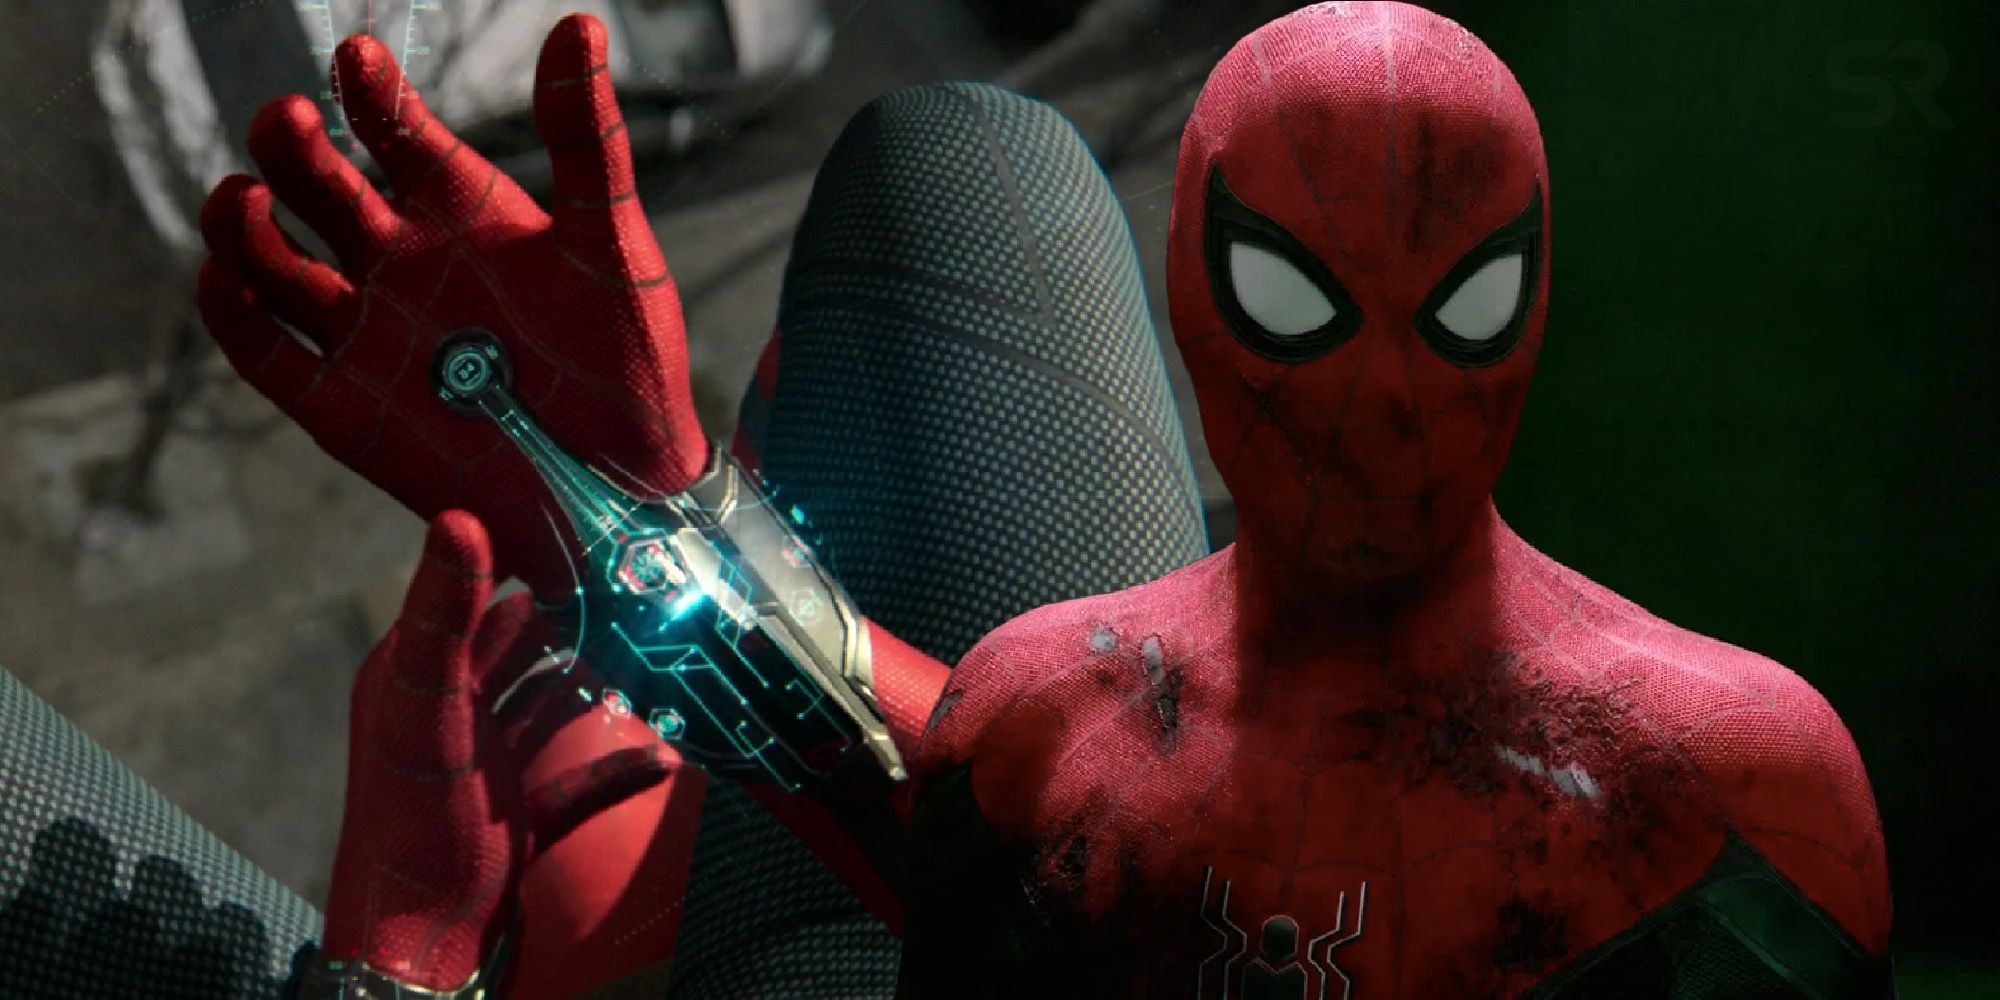 Marvel Releases Official MCU Spider-Man Web Fluid Formula